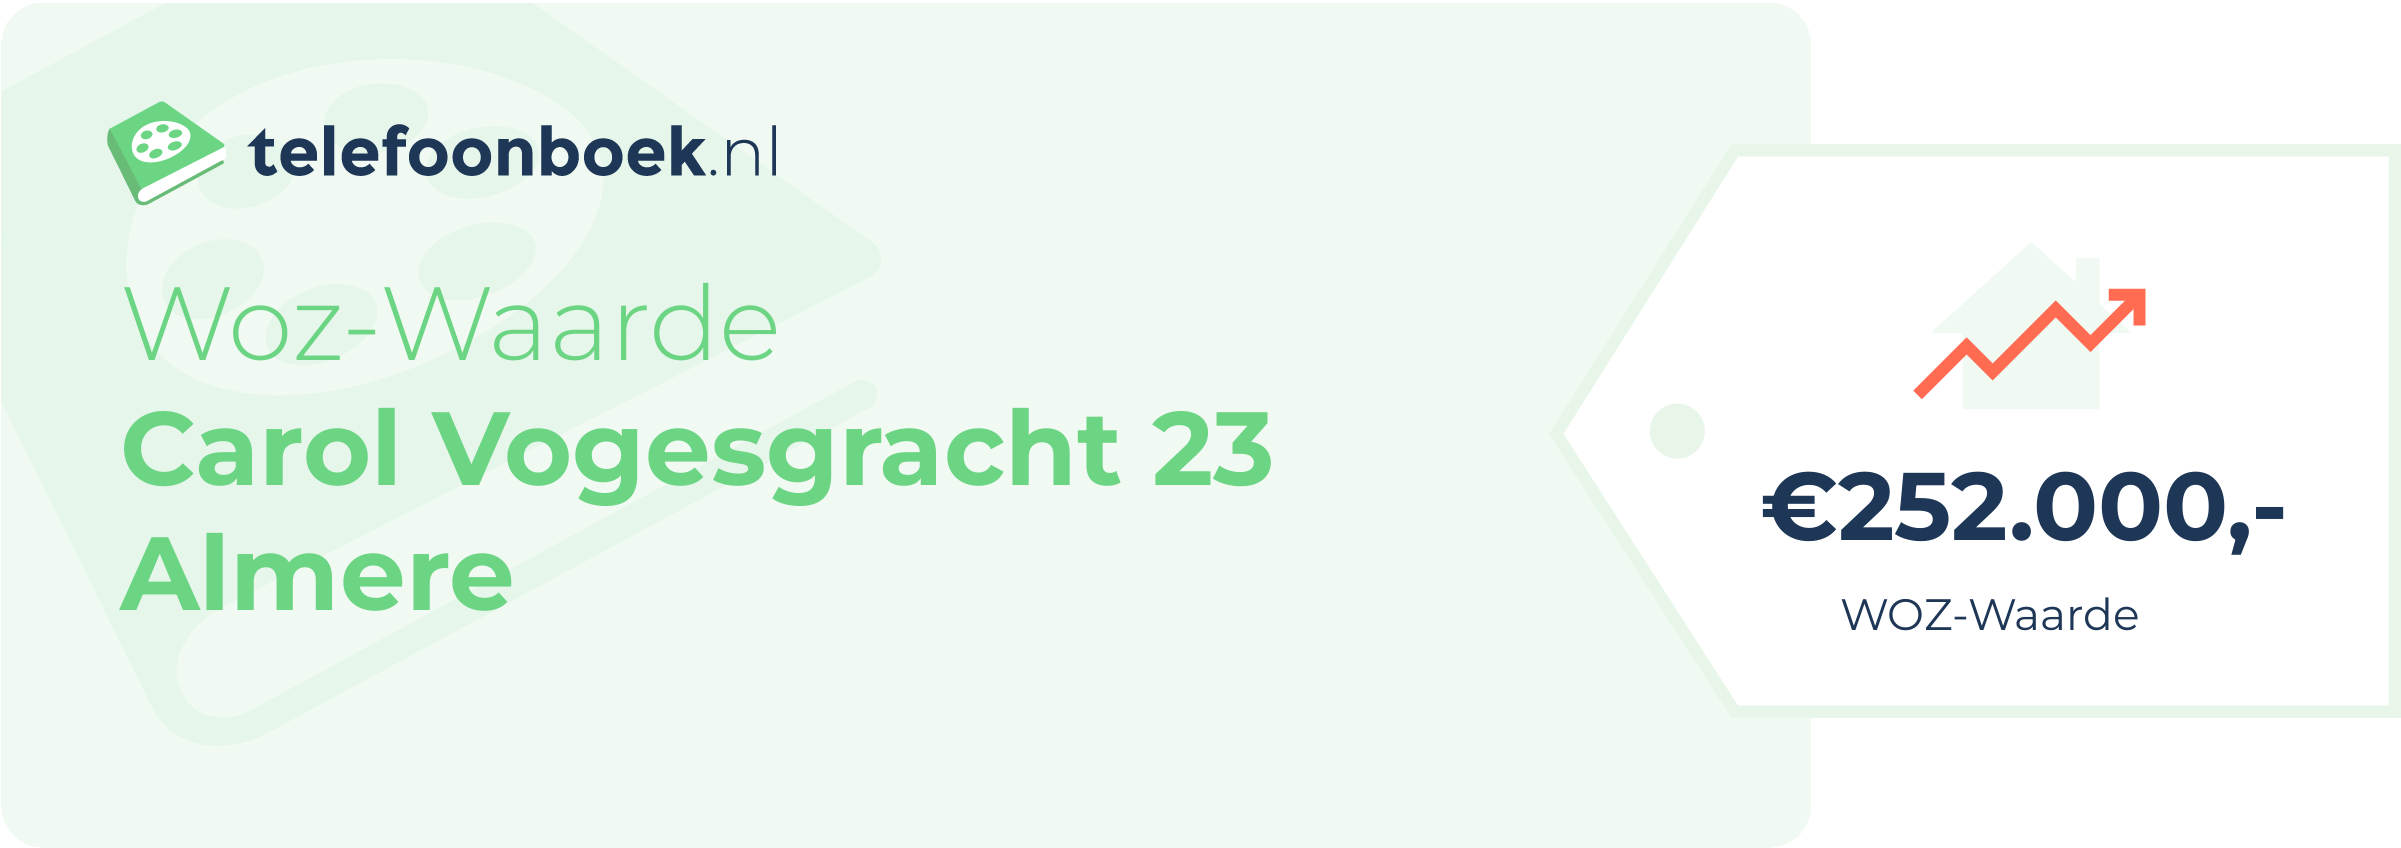 WOZ-waarde Carol Vogesgracht 23 Almere